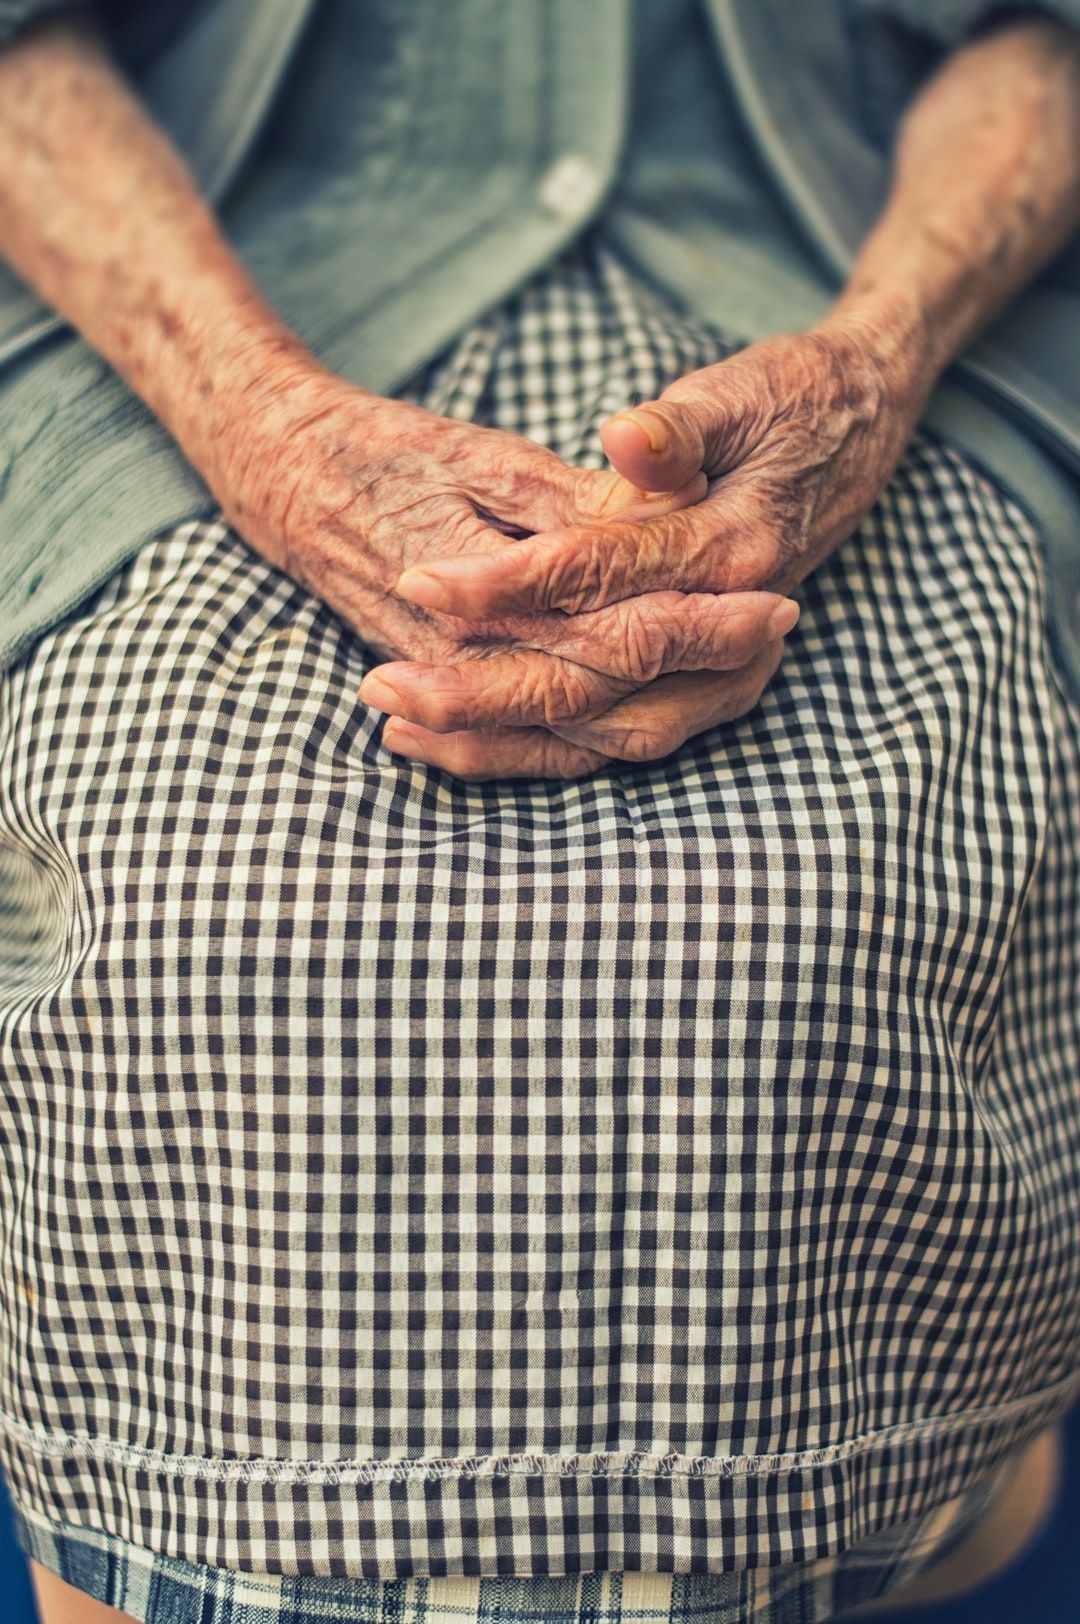 Является ли Big Tech «нацеливанием» на пожилых людей предметом беспокойства?